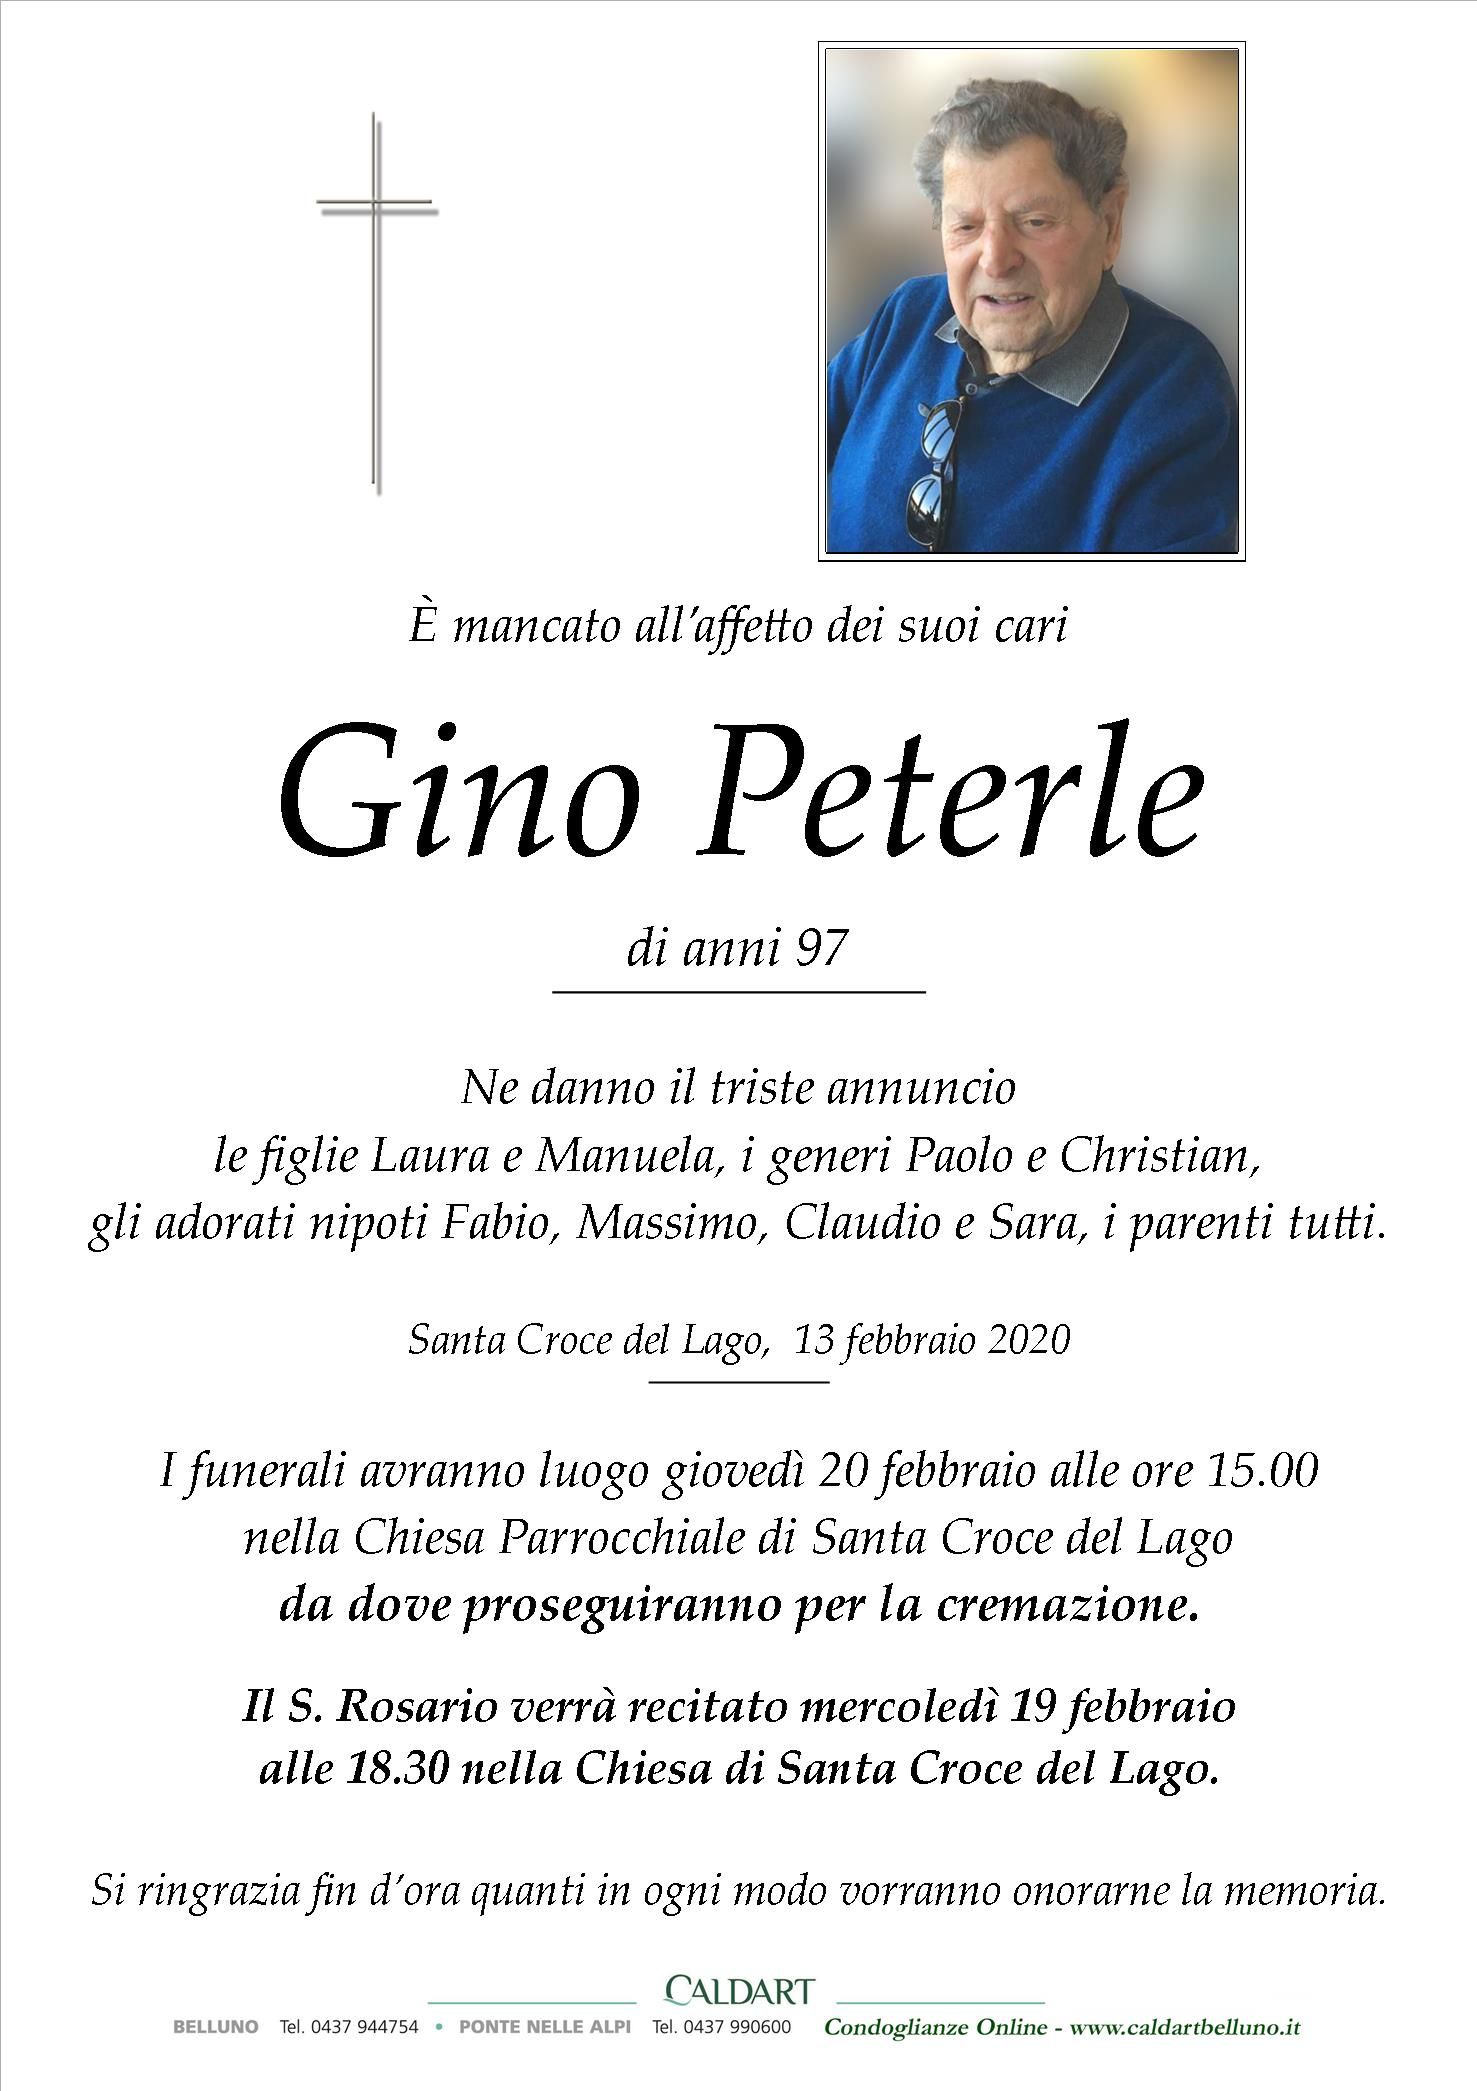 Peterle Gino